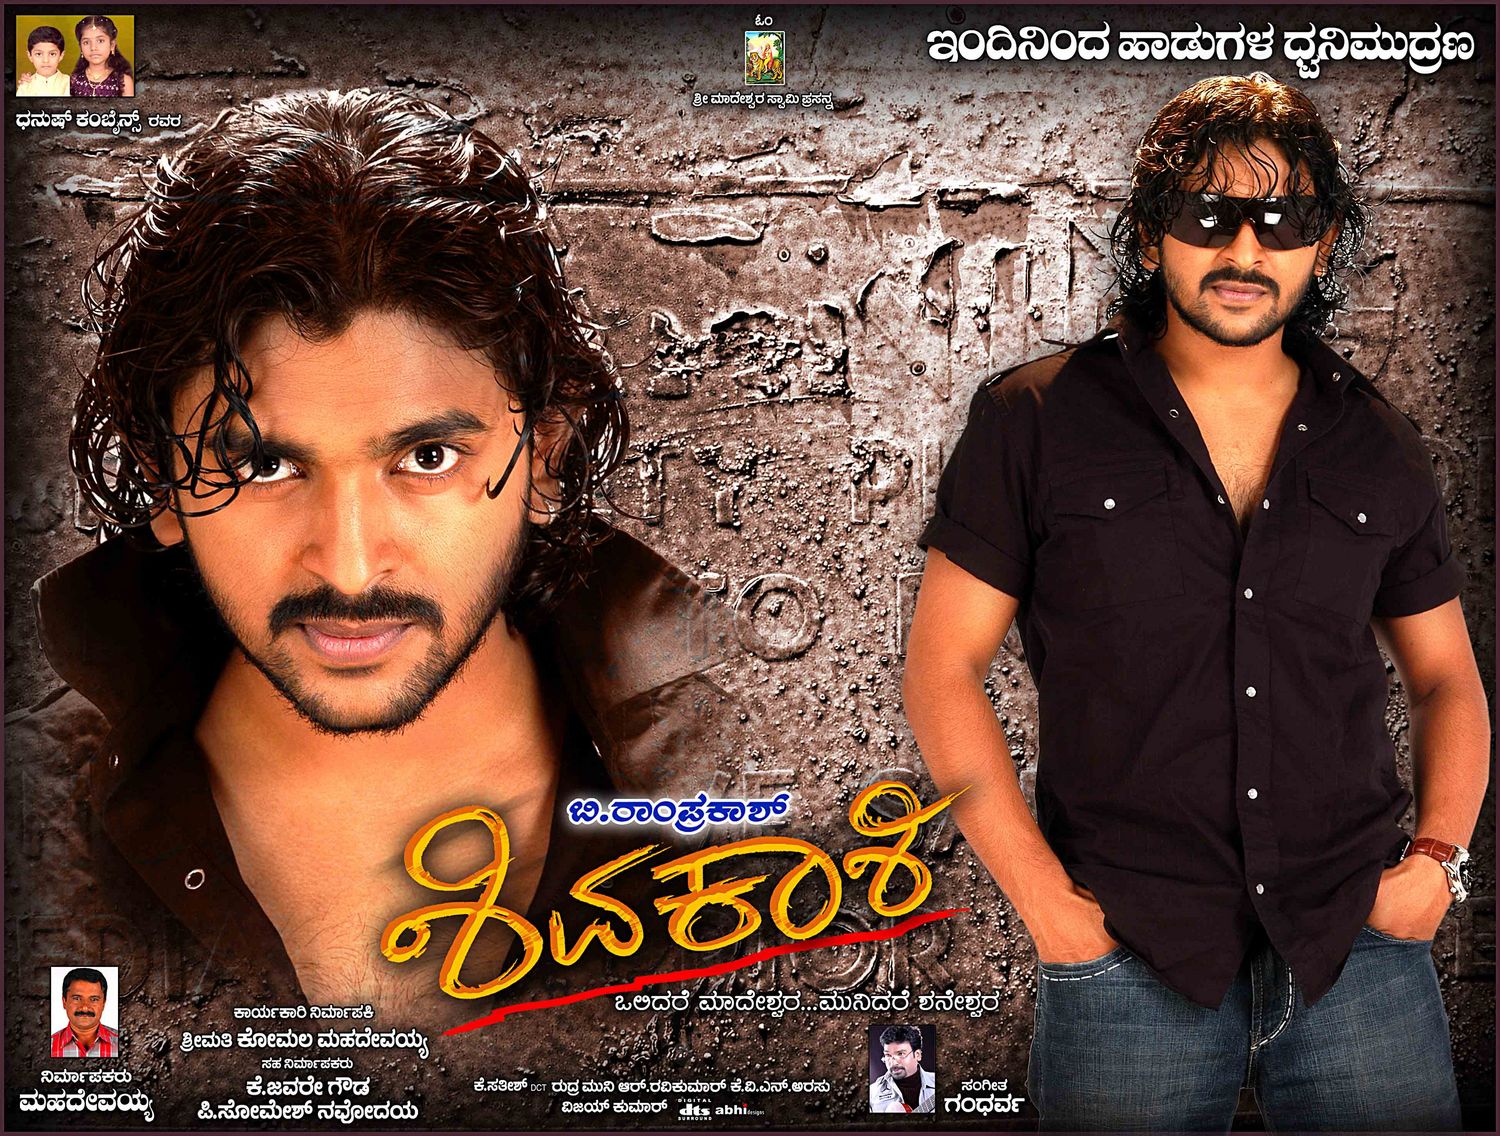 Extra Large Movie Poster Image for Shivakashi (#8 of 13)